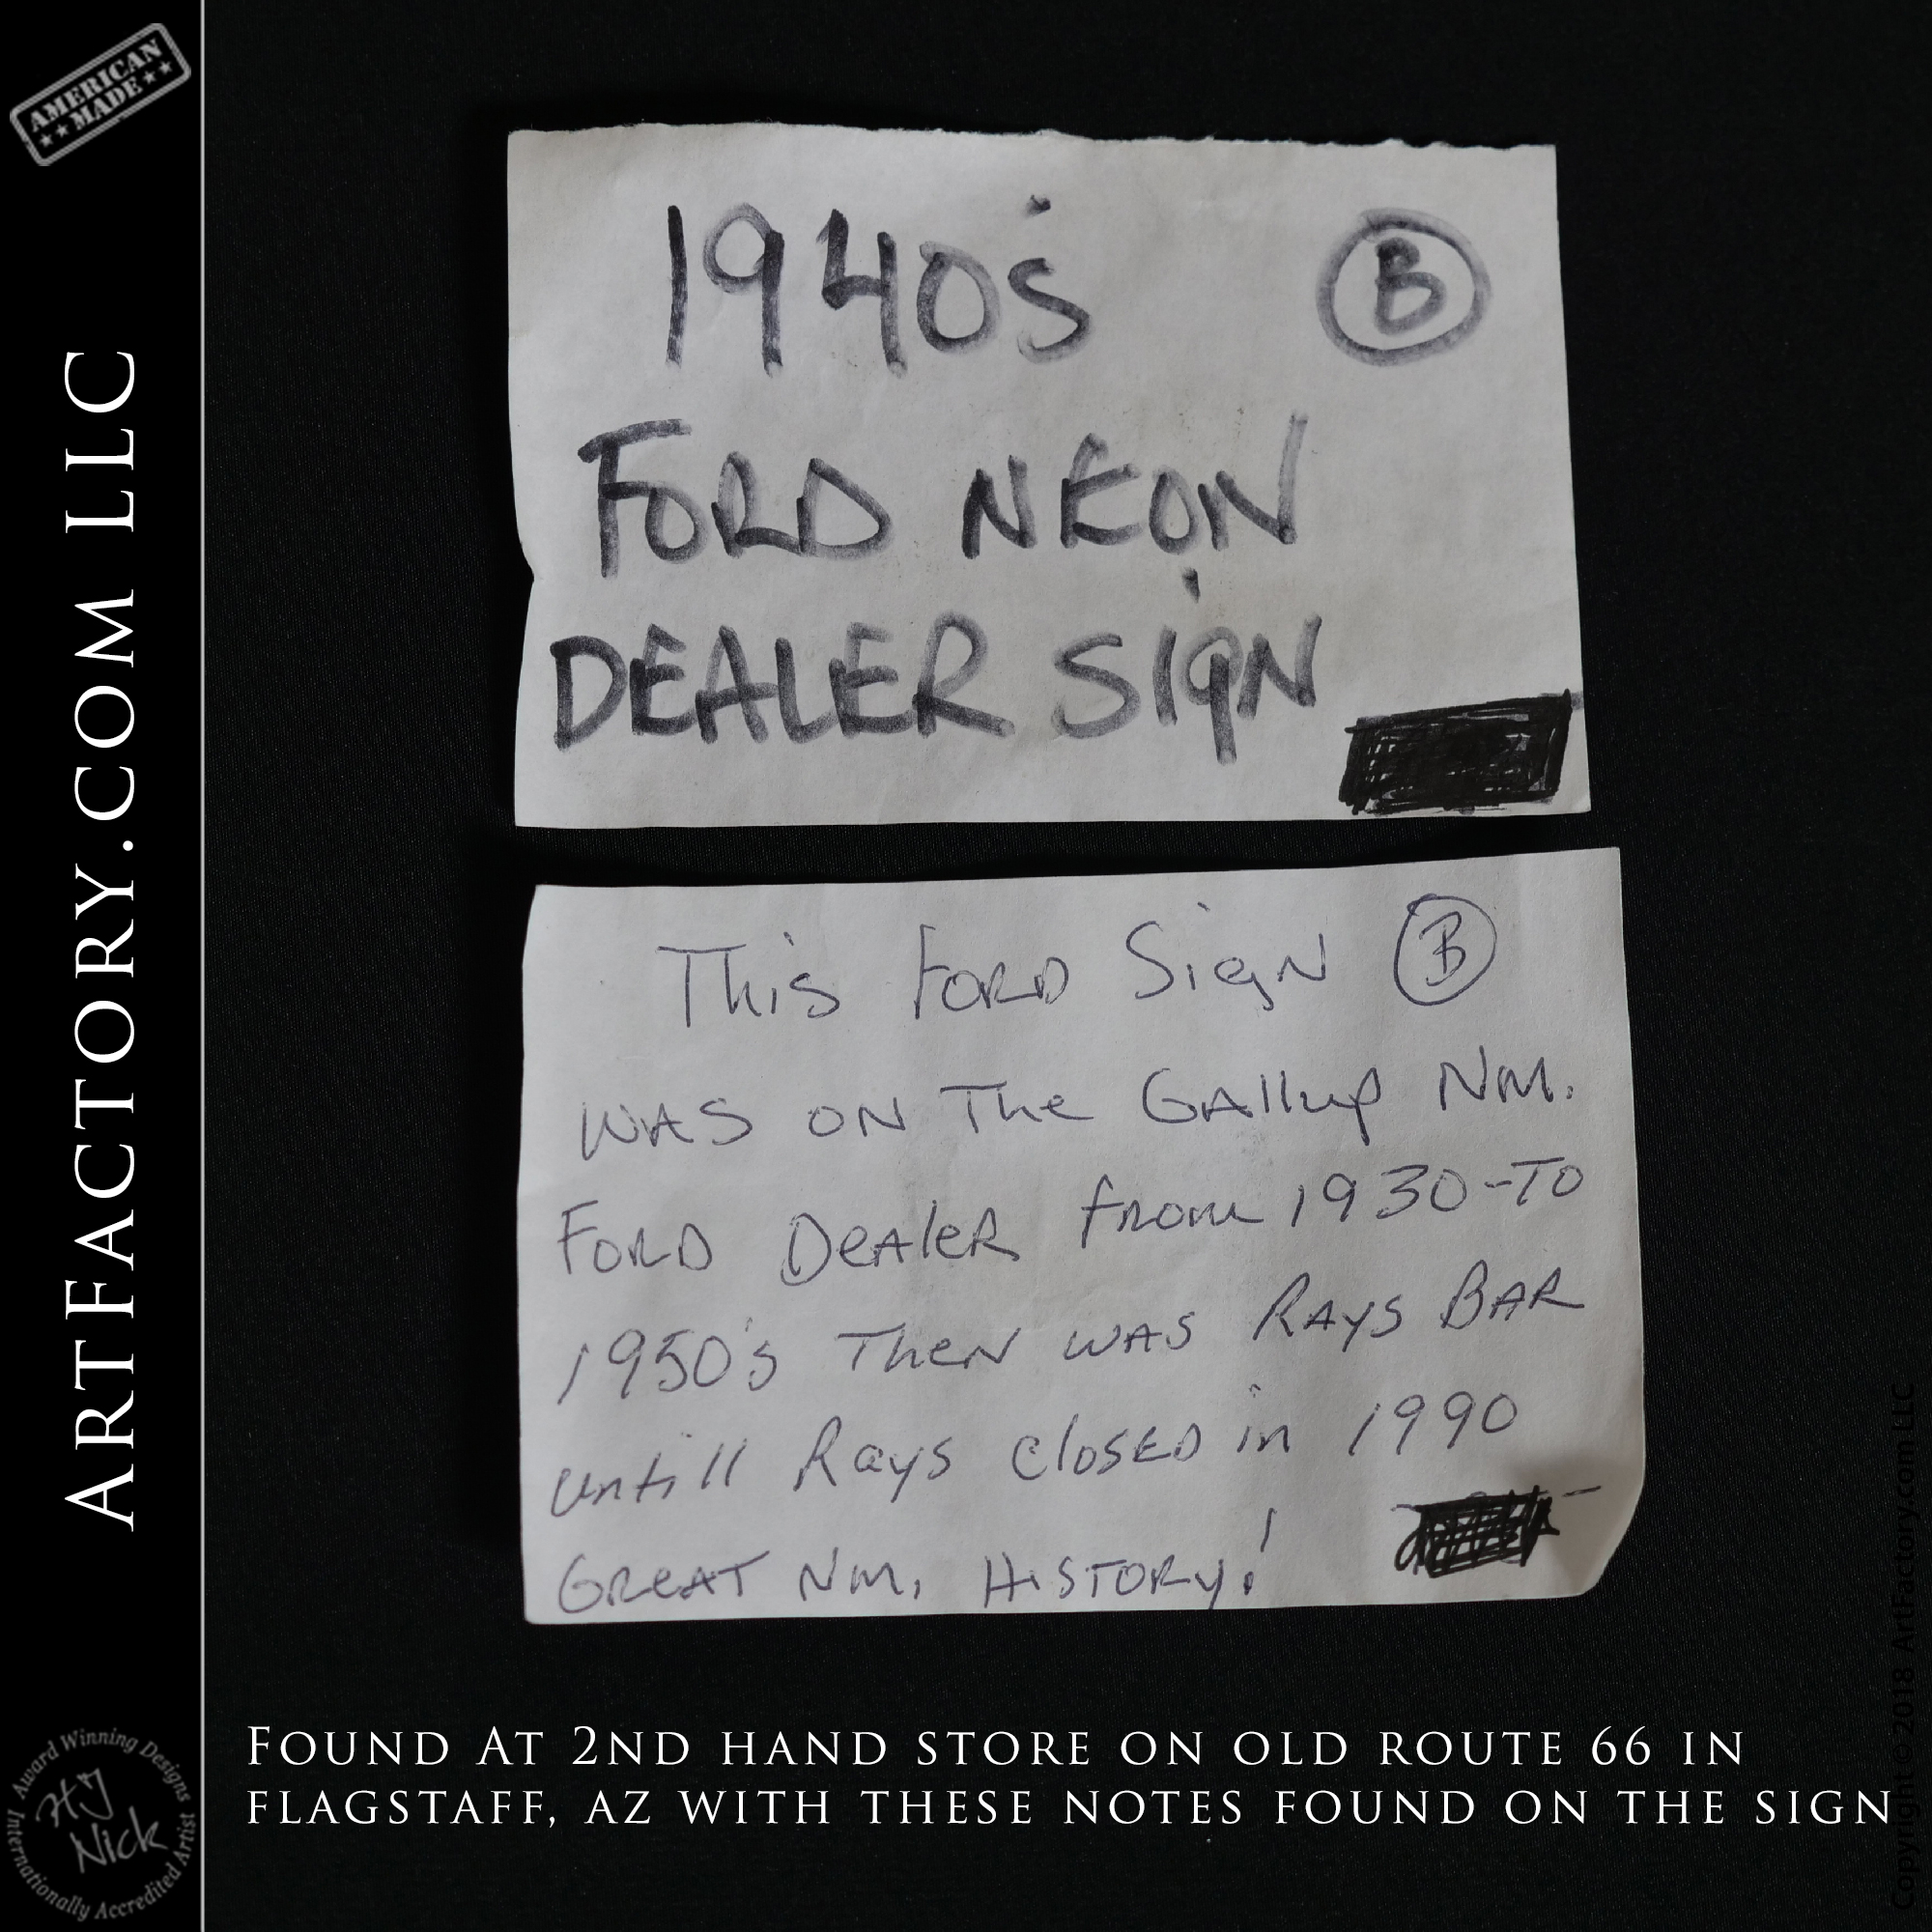 Vintage Neon Ford Dealership Sign